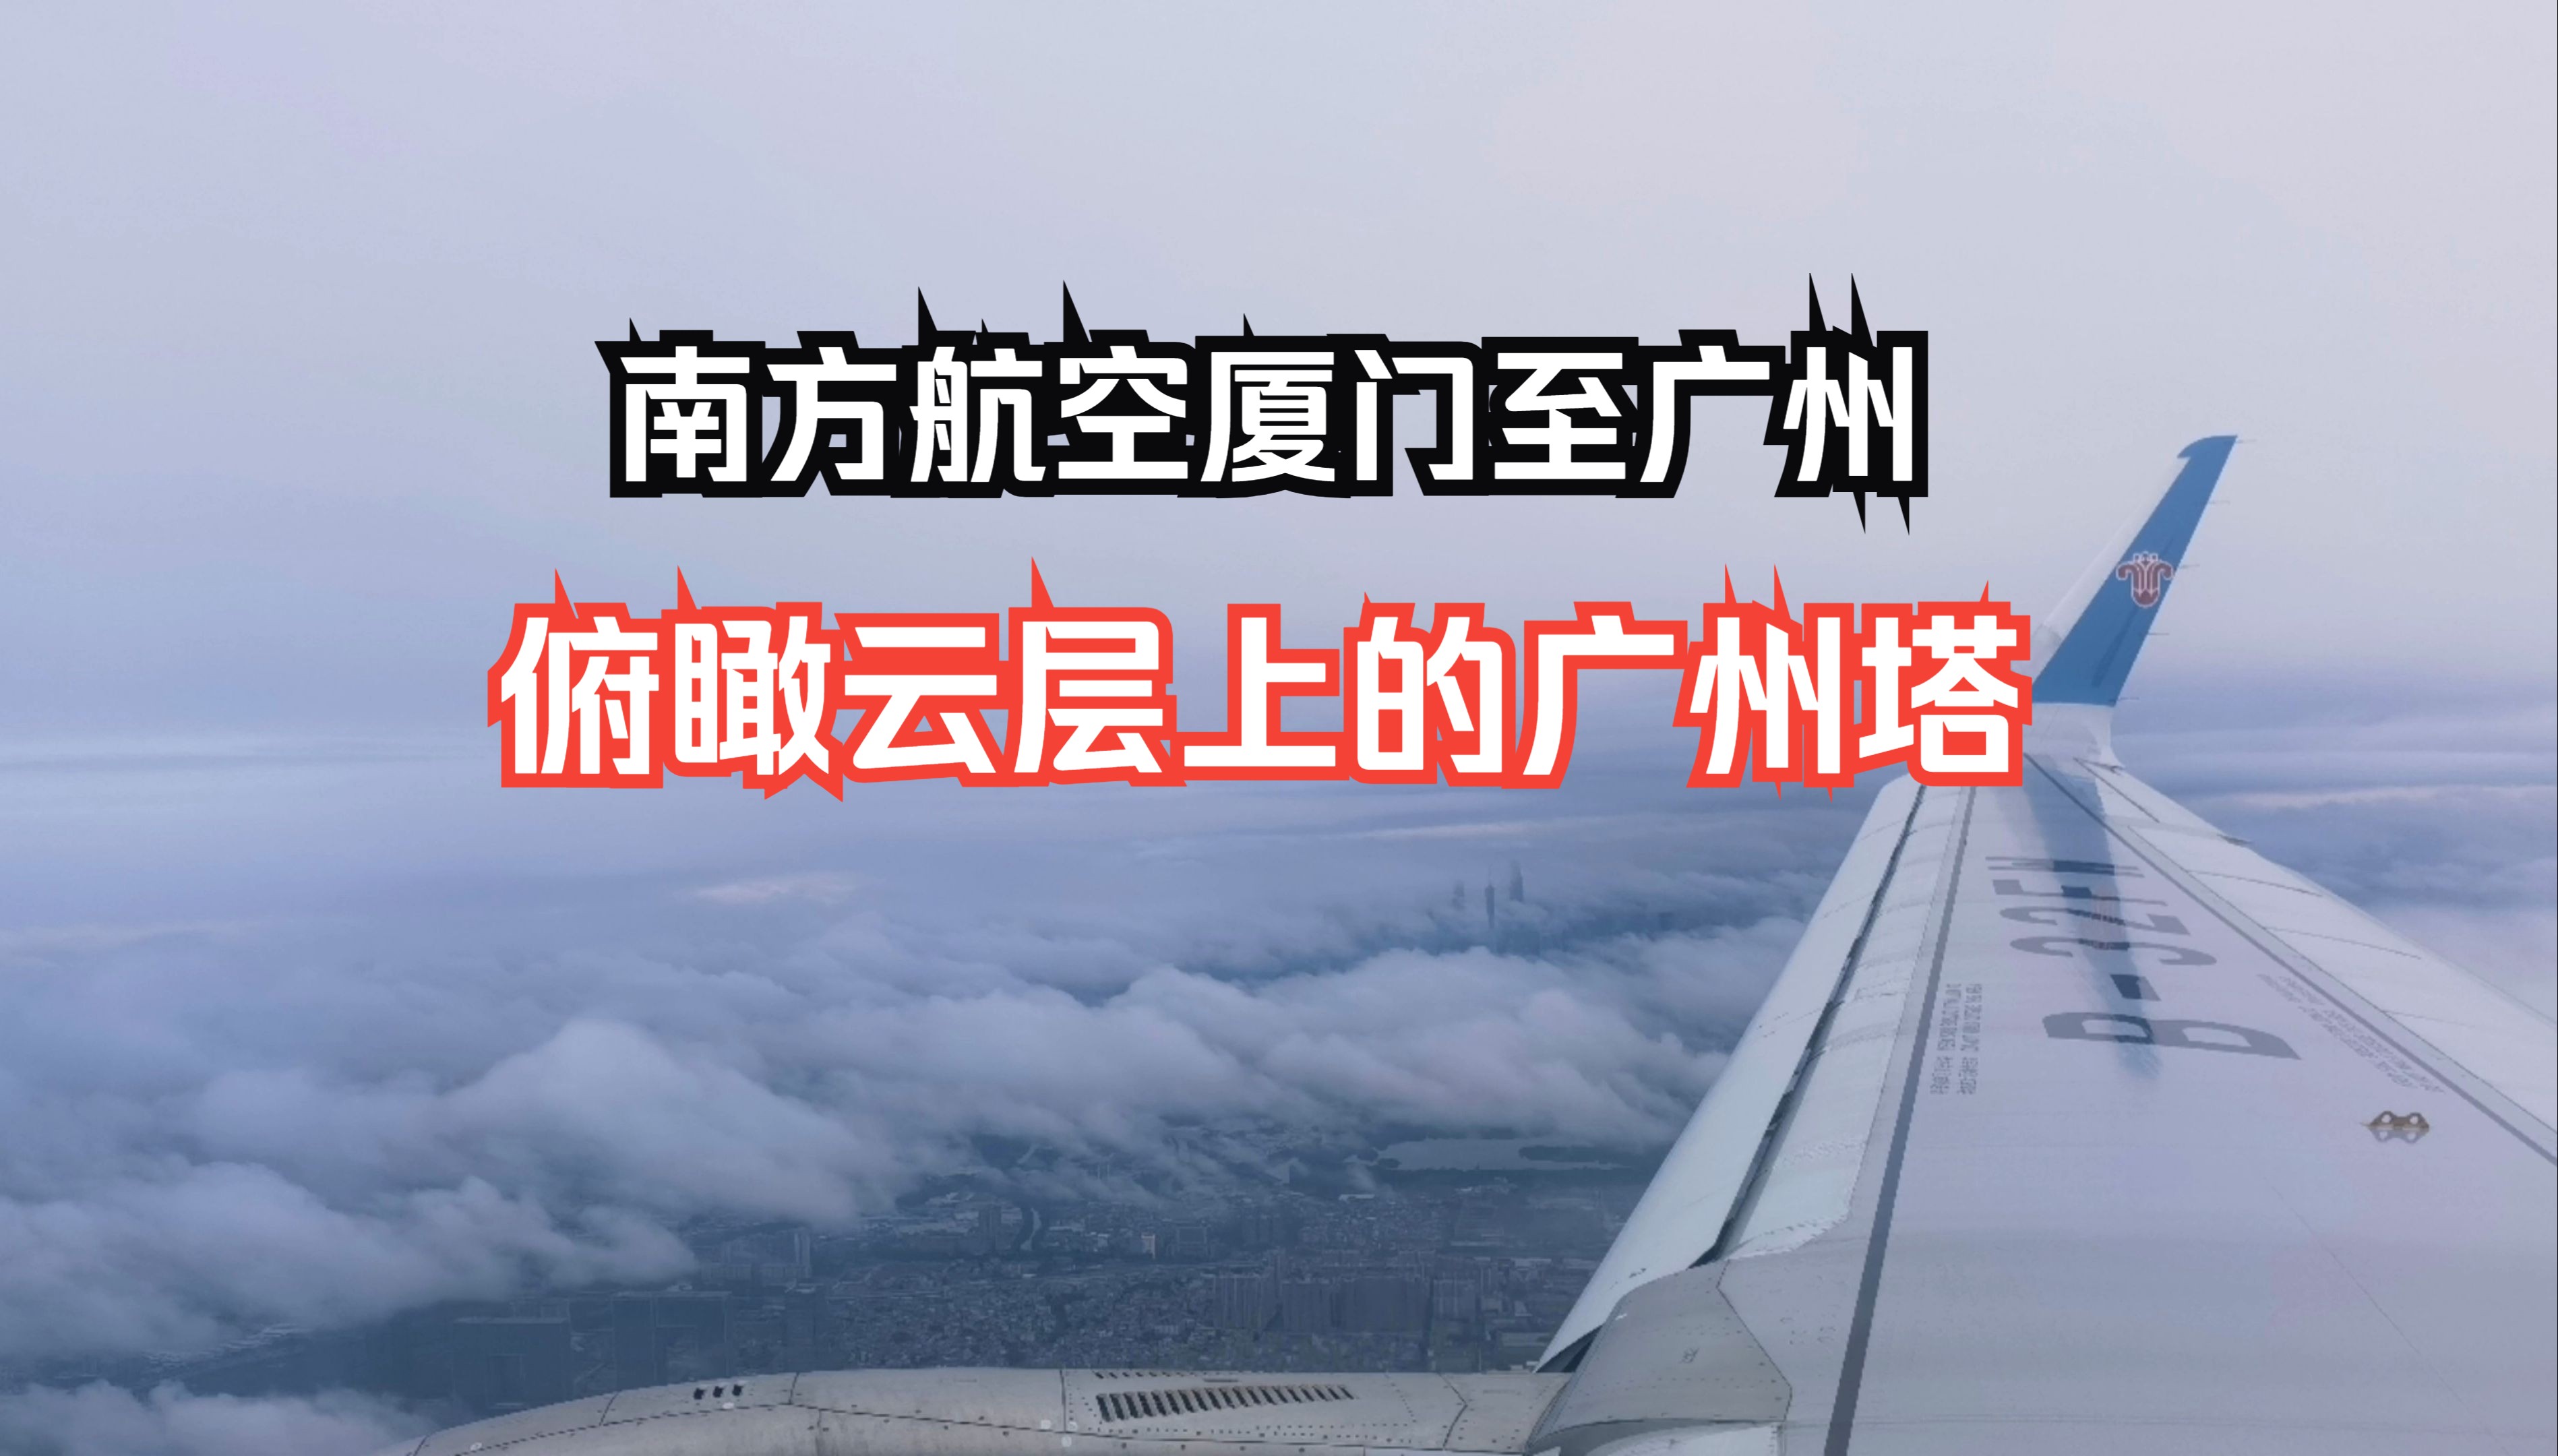 国内航班飞行体验系列之：可以俯瞰到云层上的广州塔，中国南方航空厦门至广州飞行体验